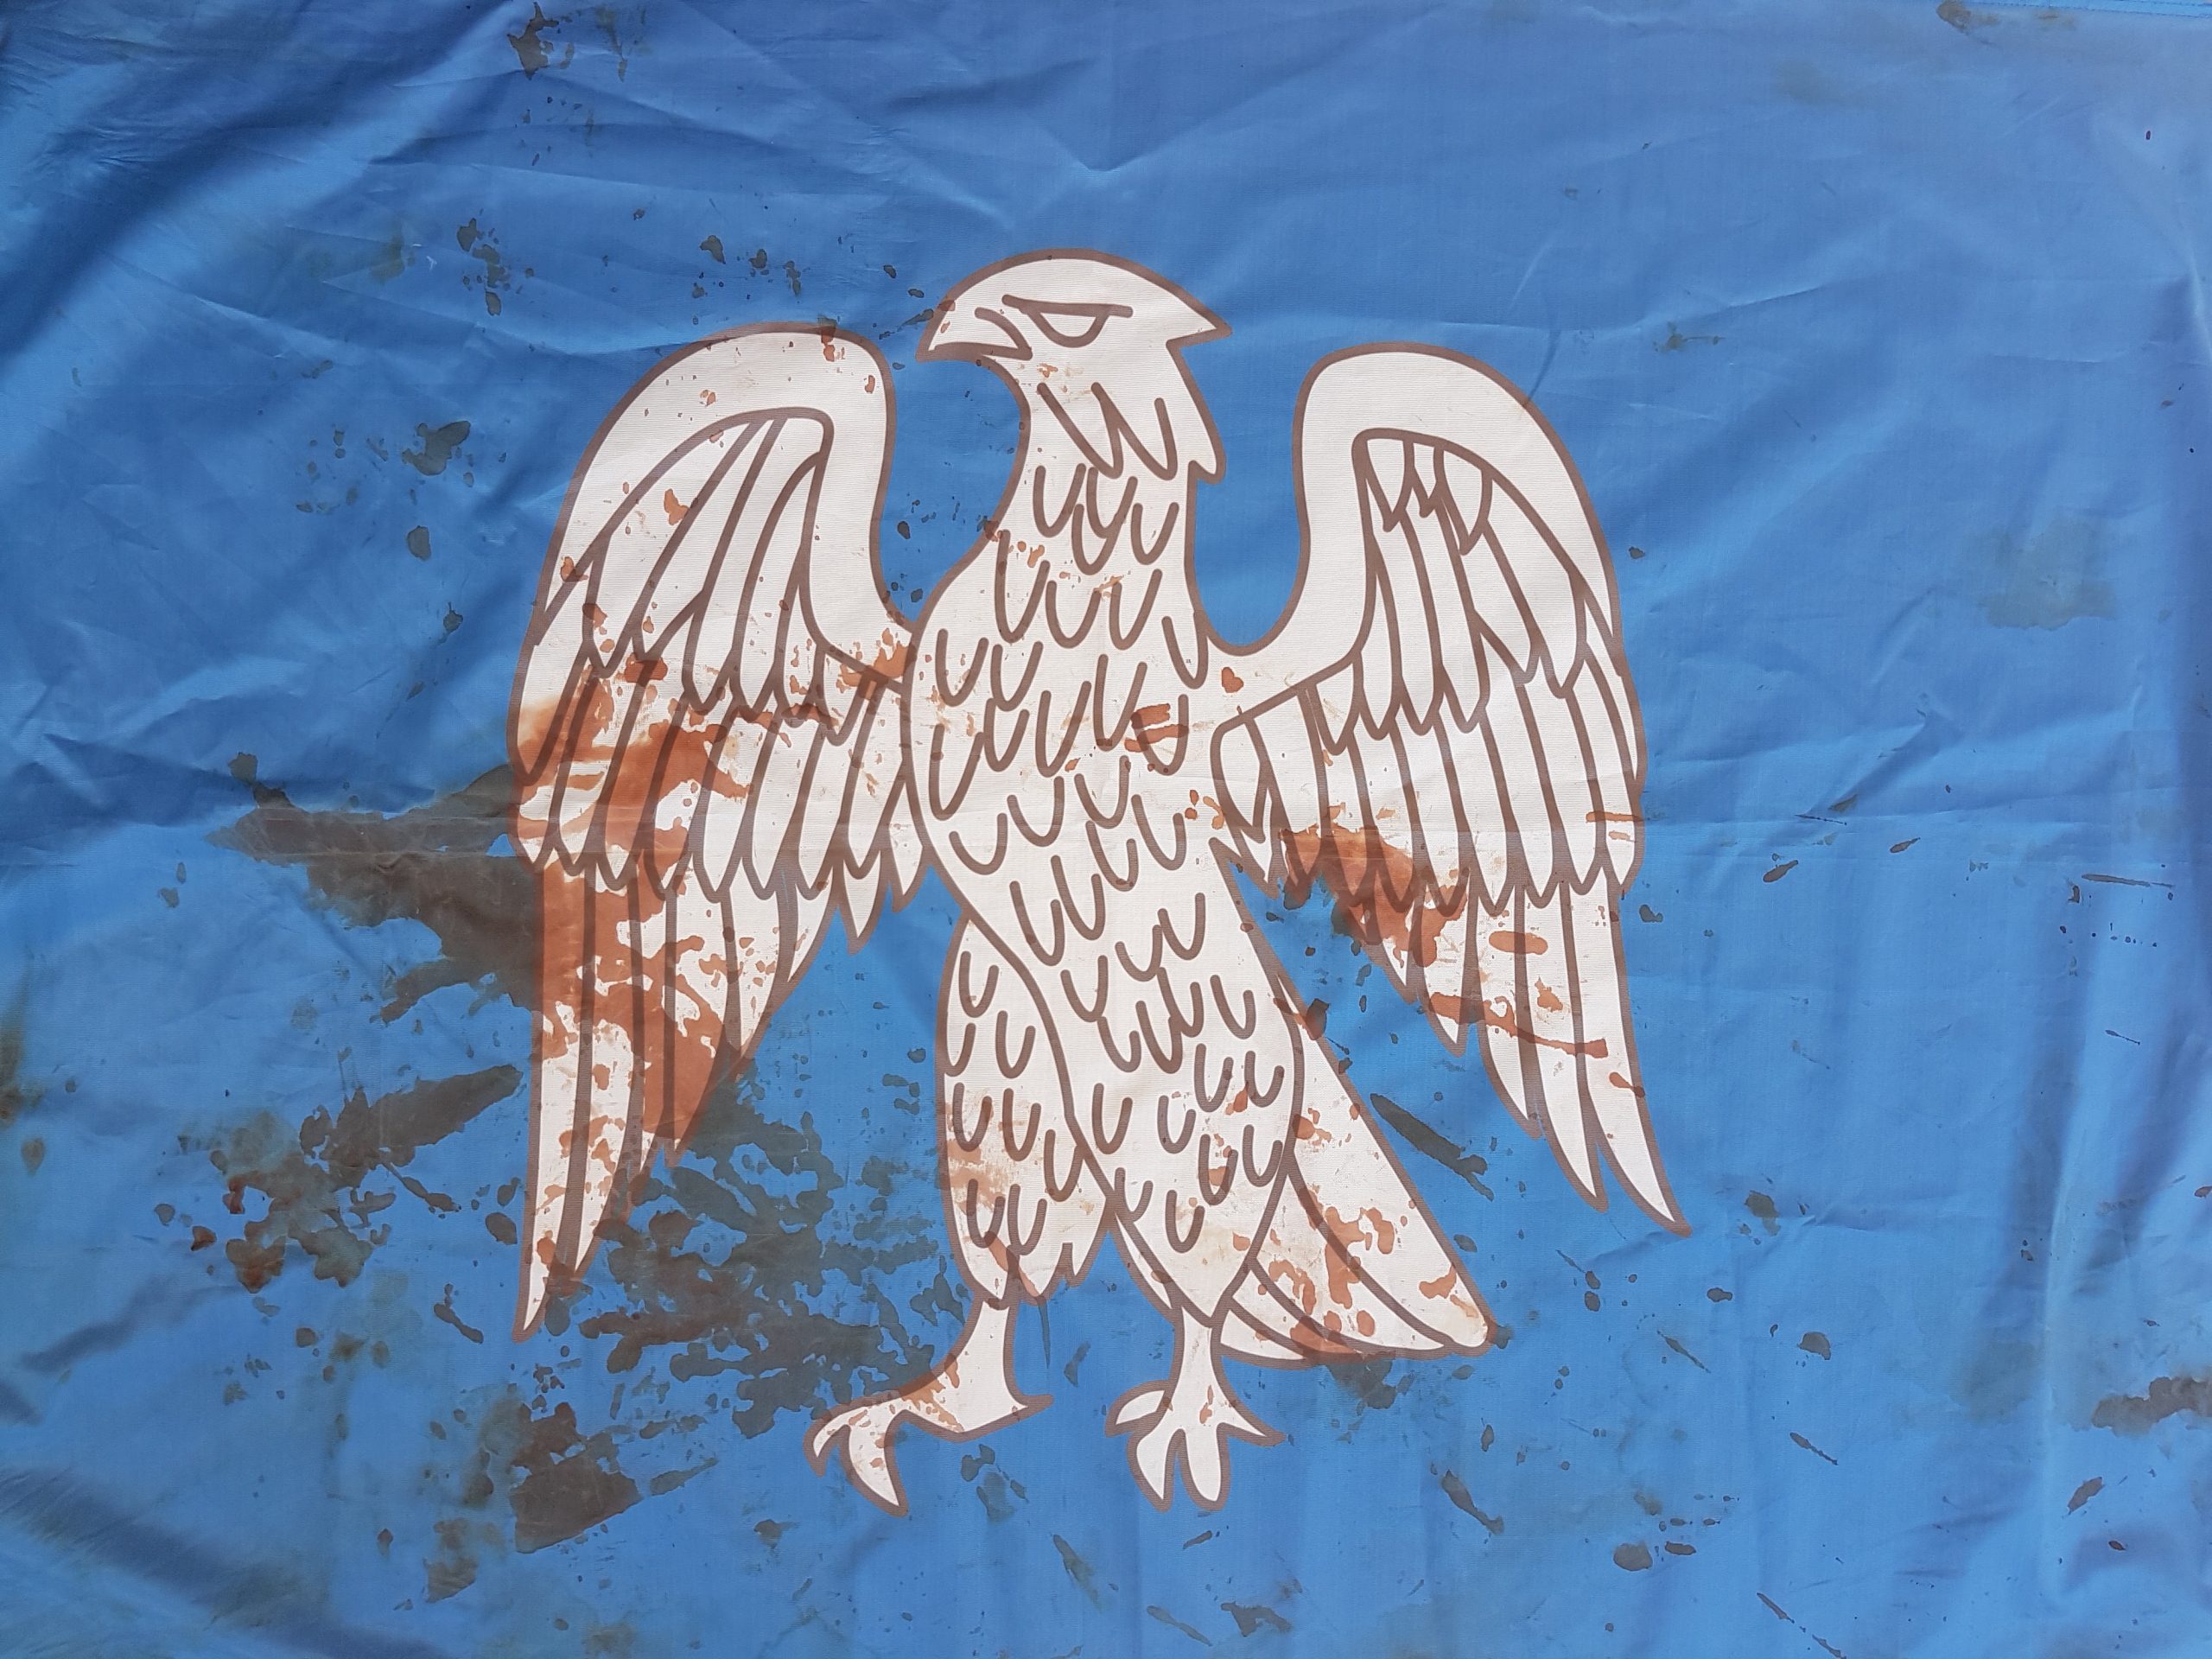 Η ματωμένη σημαία του Πισοδερίου στο συλλαλητήριο στο Σύνταγμα